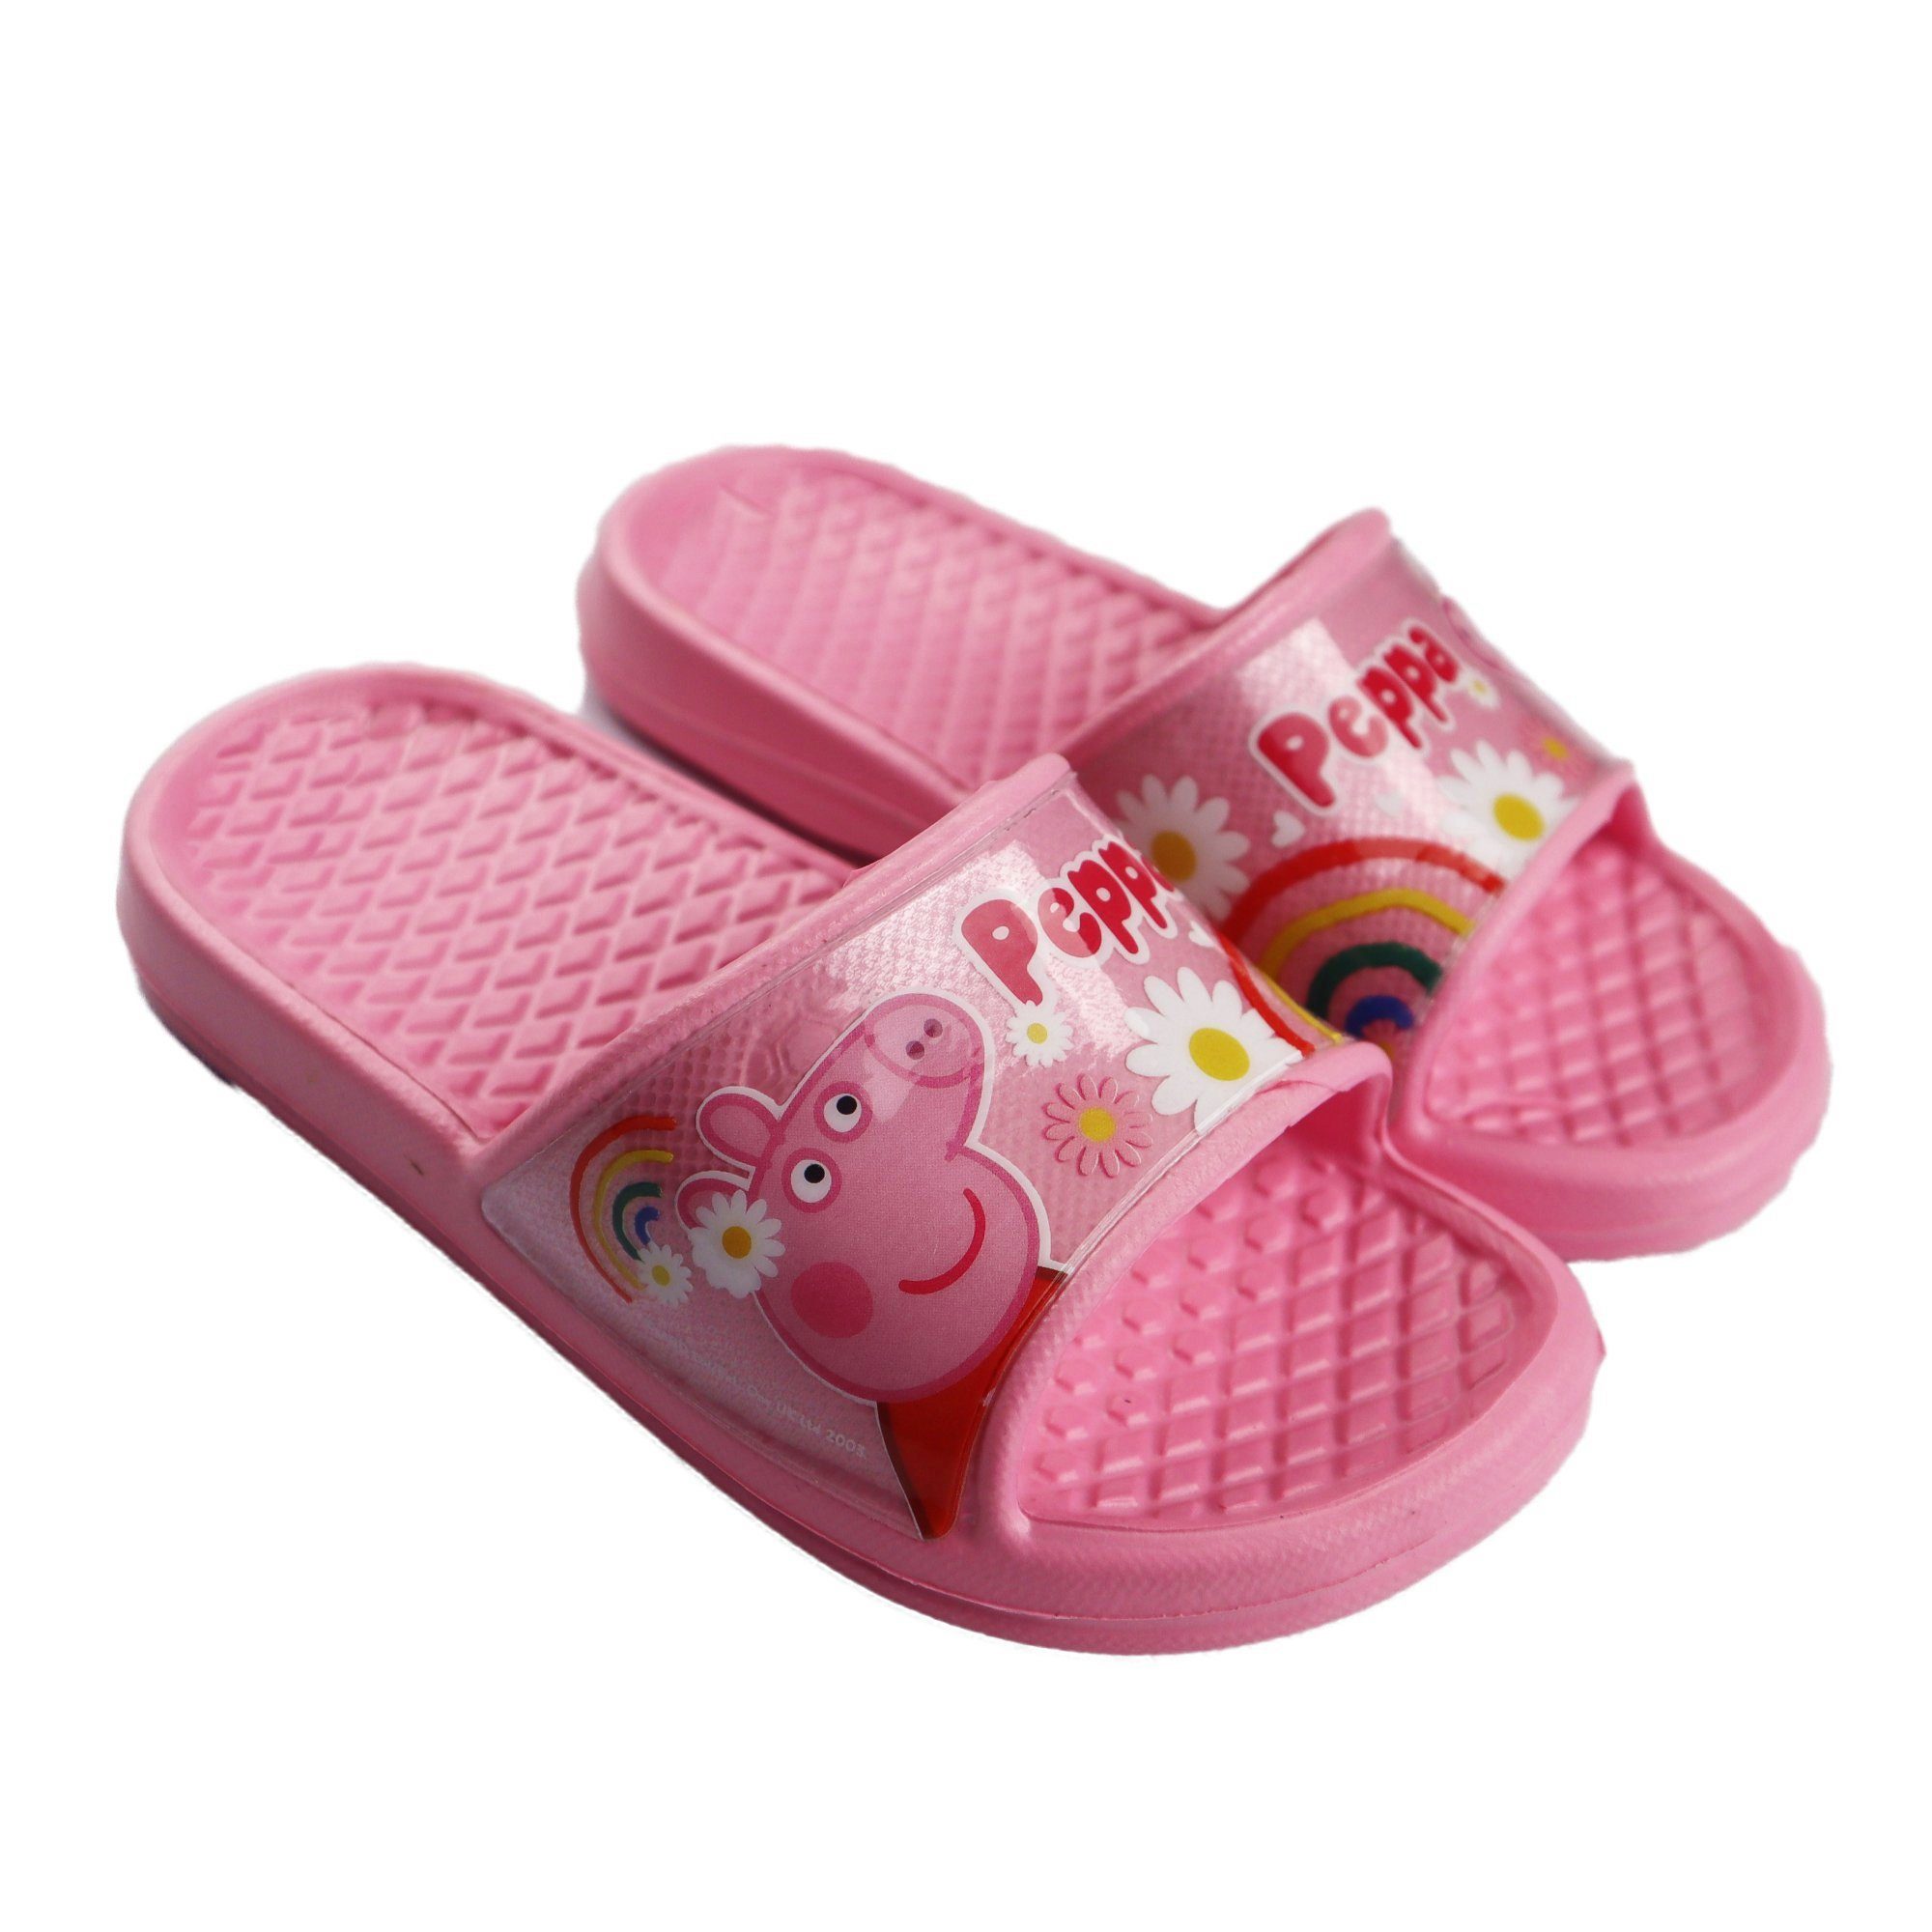 Rosa 24 Peppa Wutz Sandale Sandalen Gr. 31 Pig Kinder Peppa bis Mädchen